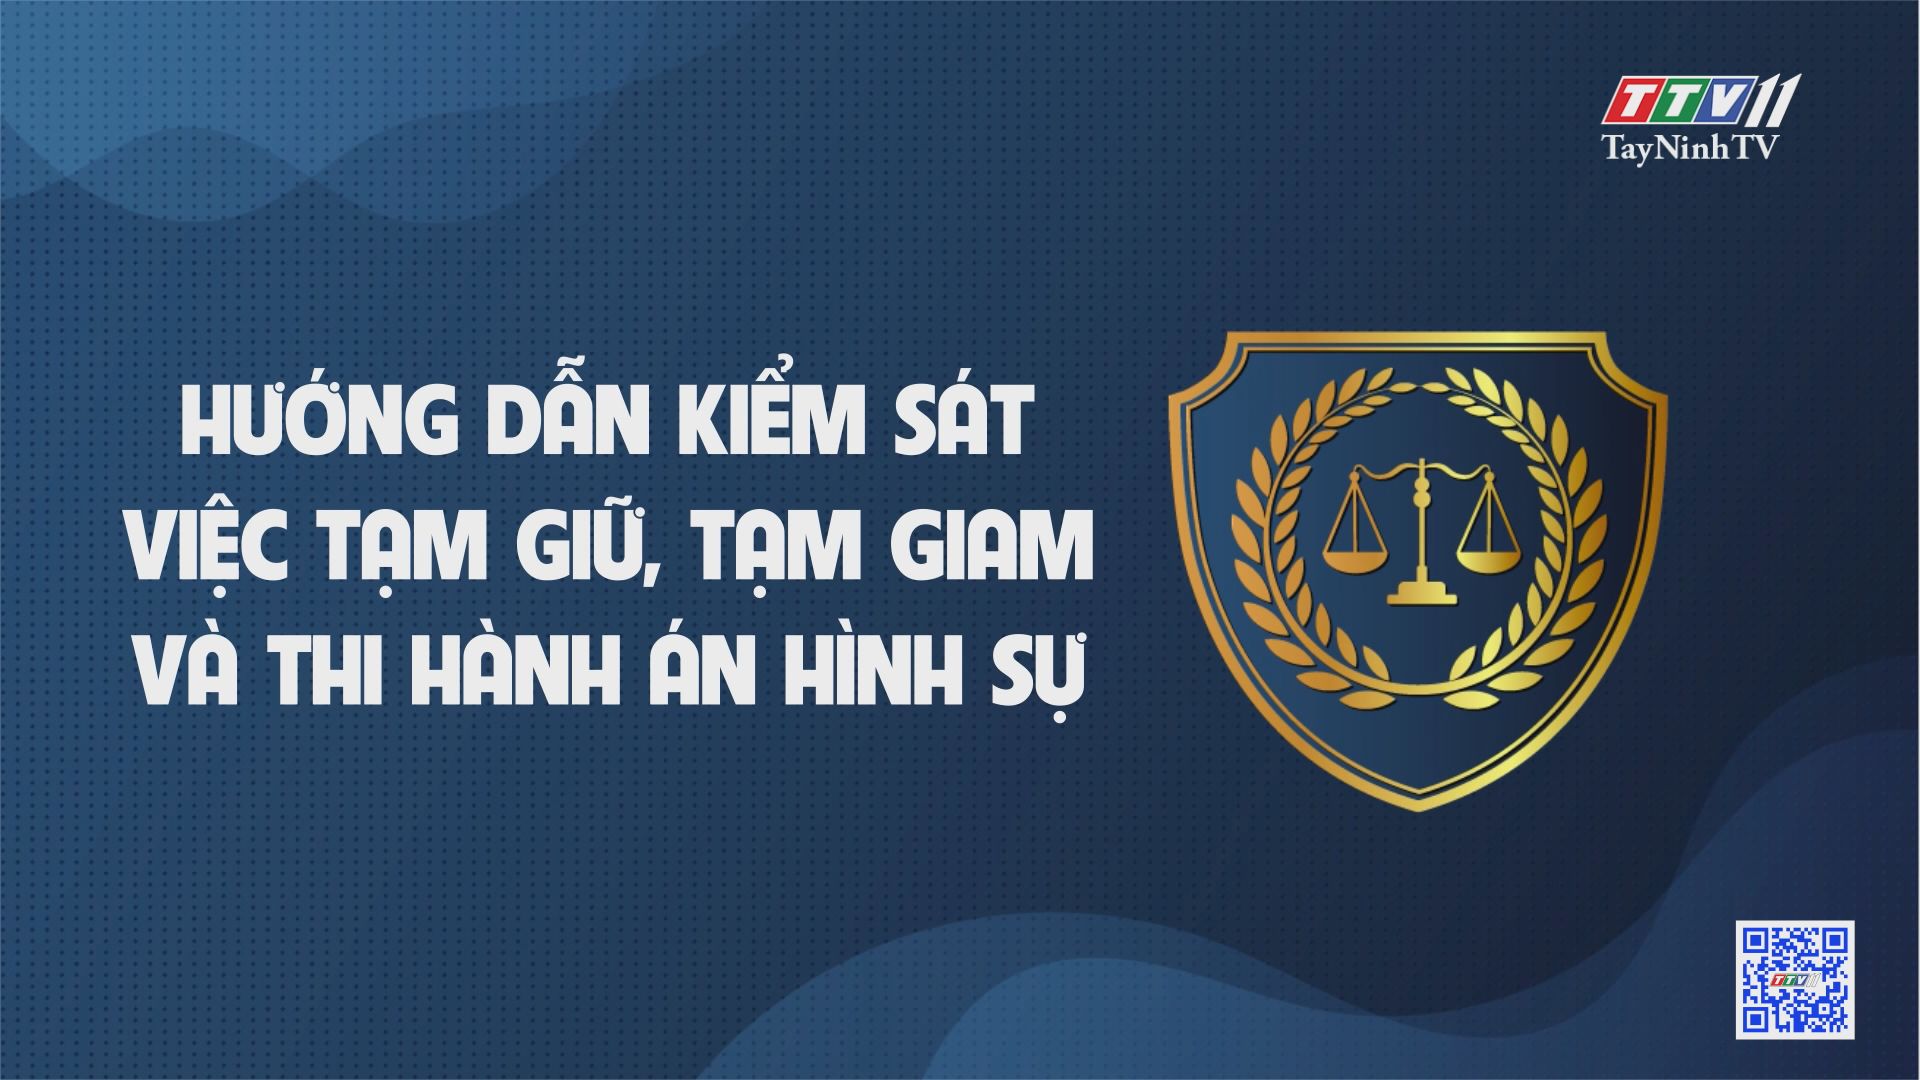 Hướng dẫn kiểm sát việc tạm giữ, tạm giam và thi hành án hình sự | Phổ biến văn bản pháp luật | TayNinhTV